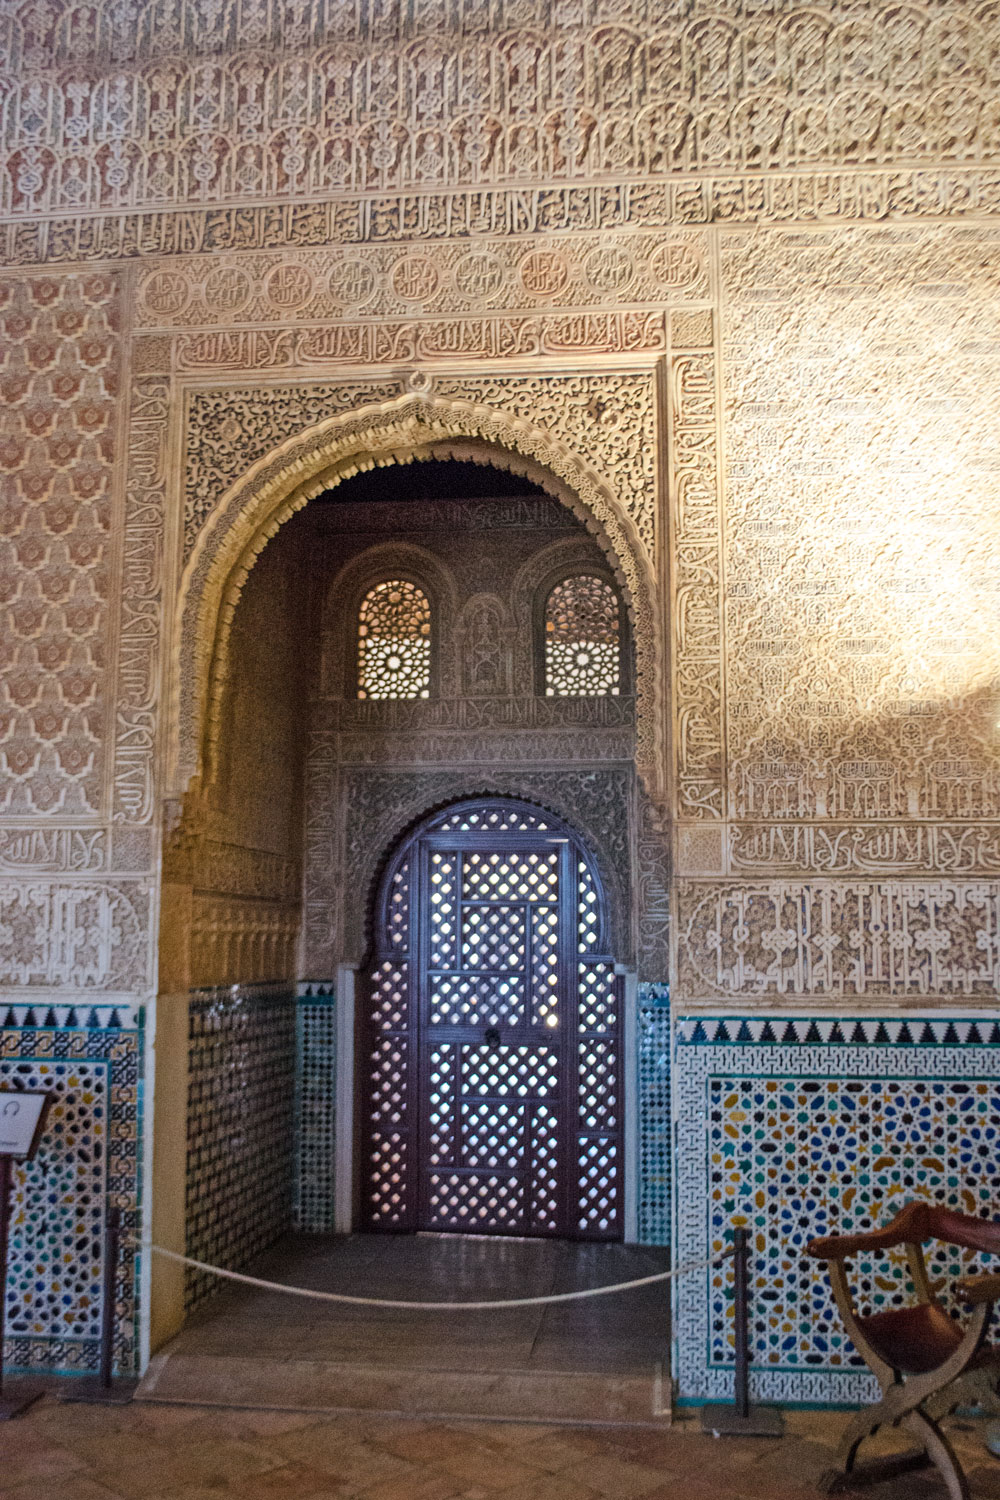 [unbezahlte werbung] Die Paläste der Alhambra